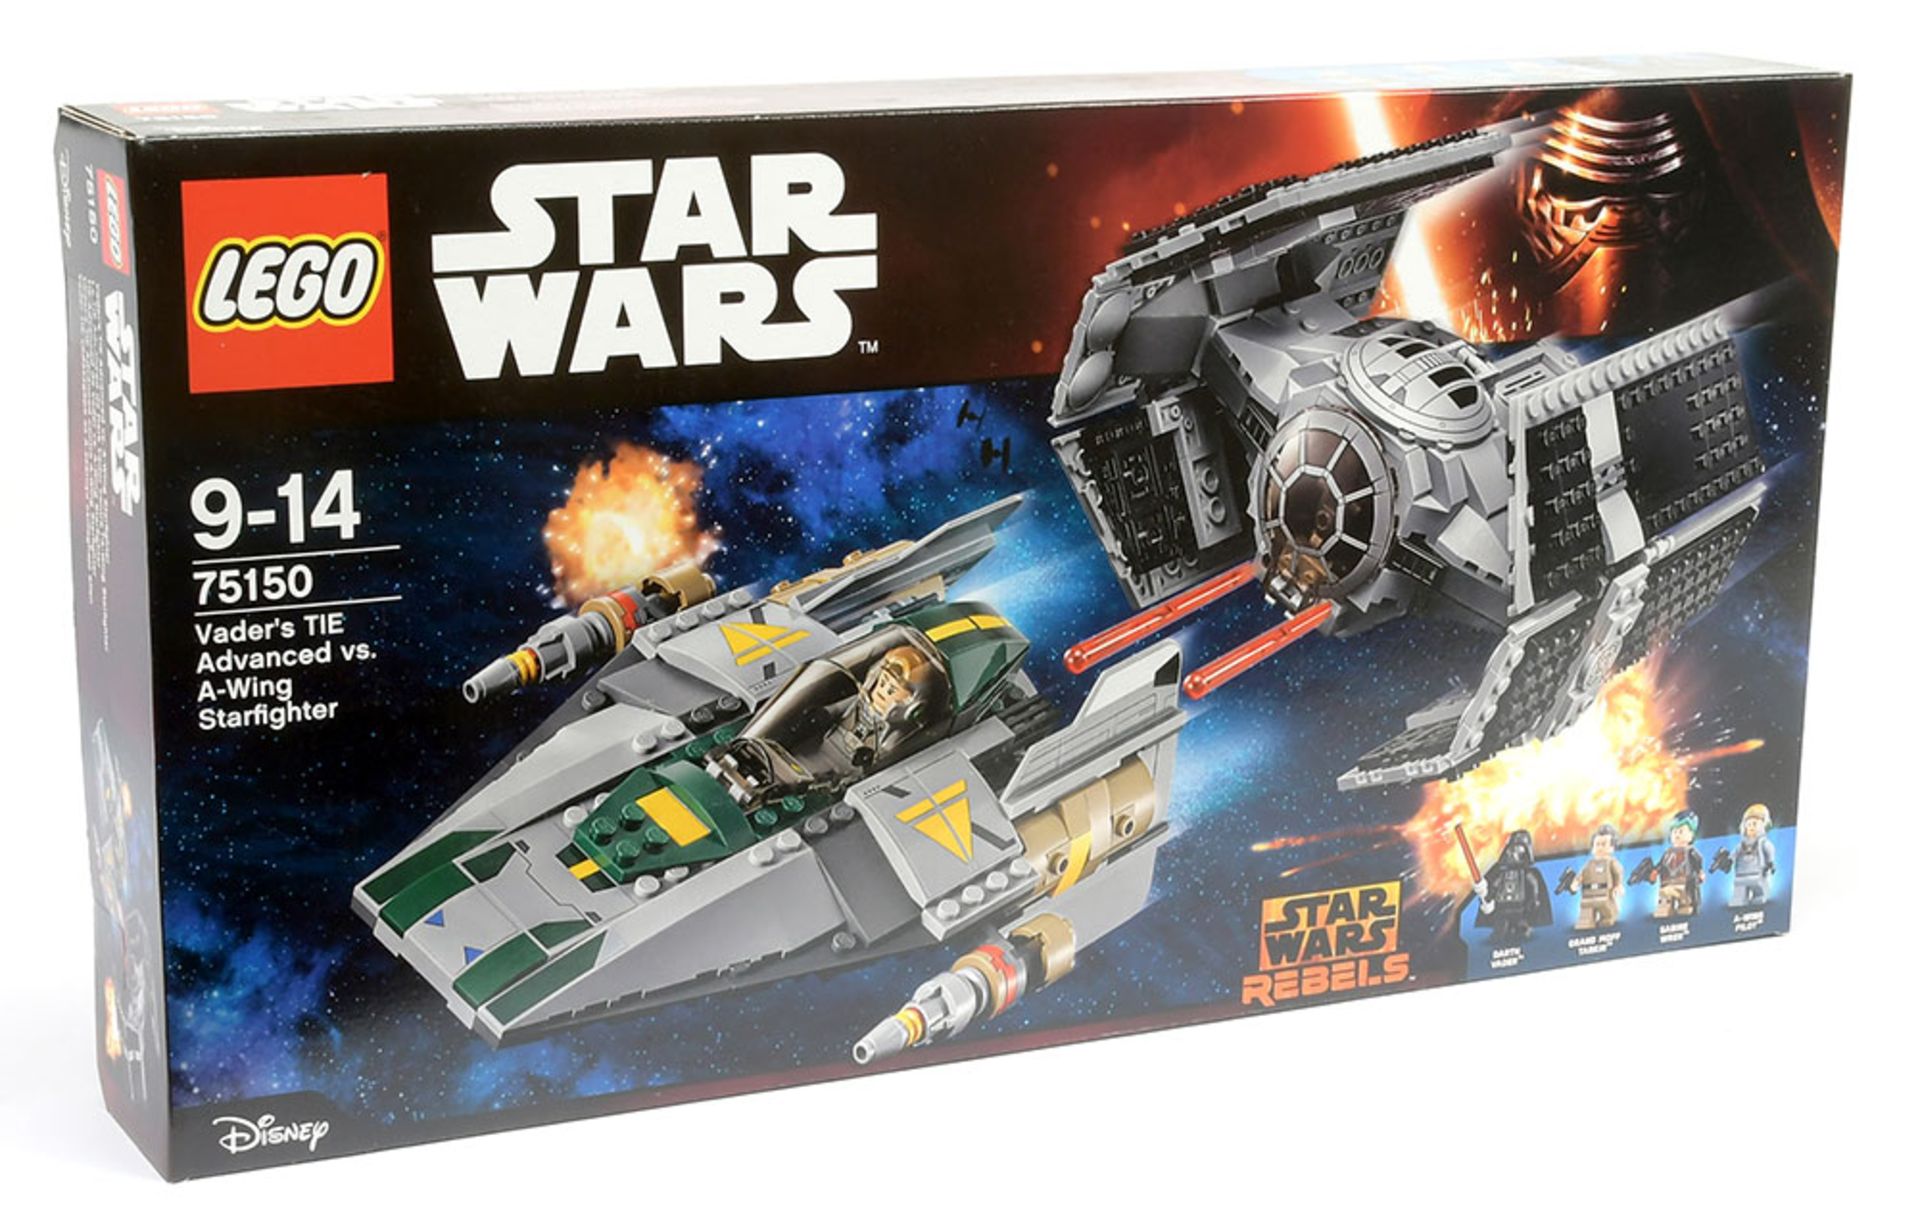 Lego Star Wars set number 75150 Vader's TIE